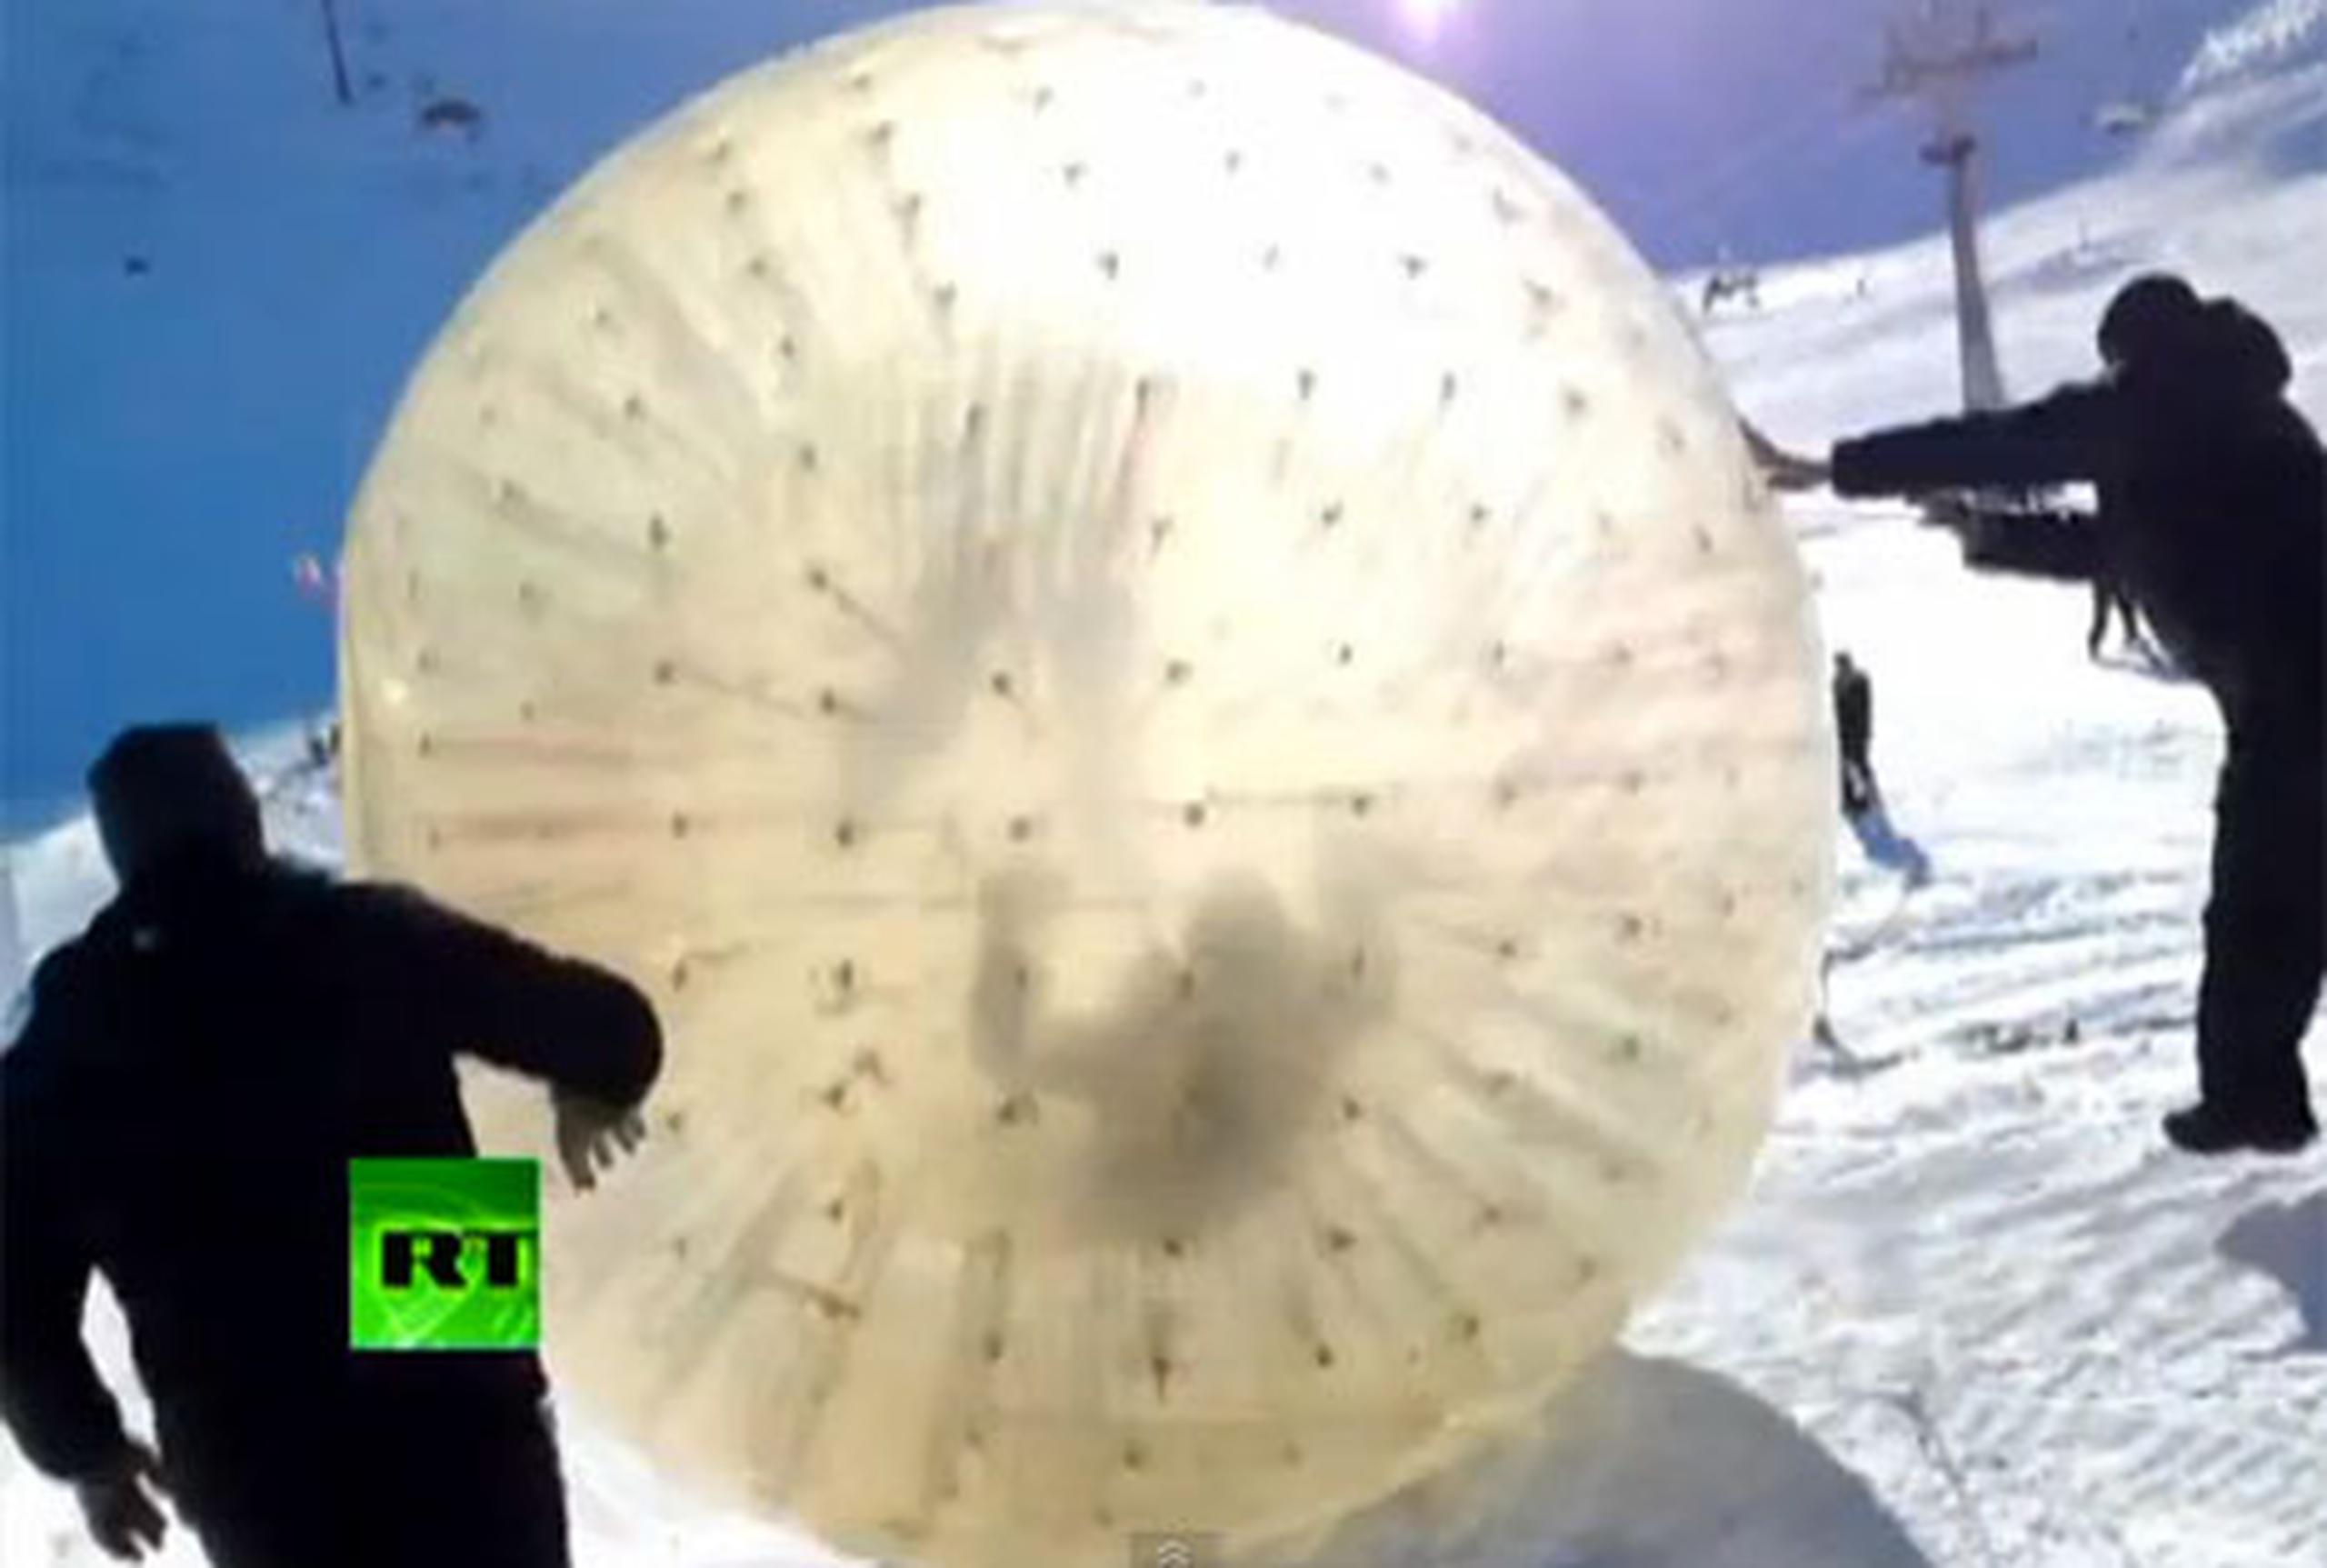 La pelota de plástico transparente, conocida como "zorb", se desvió de la pista y cayó a un precipicio en las escarpadas montañas del Cáucaso en el sur de Rusia. (Youtube)